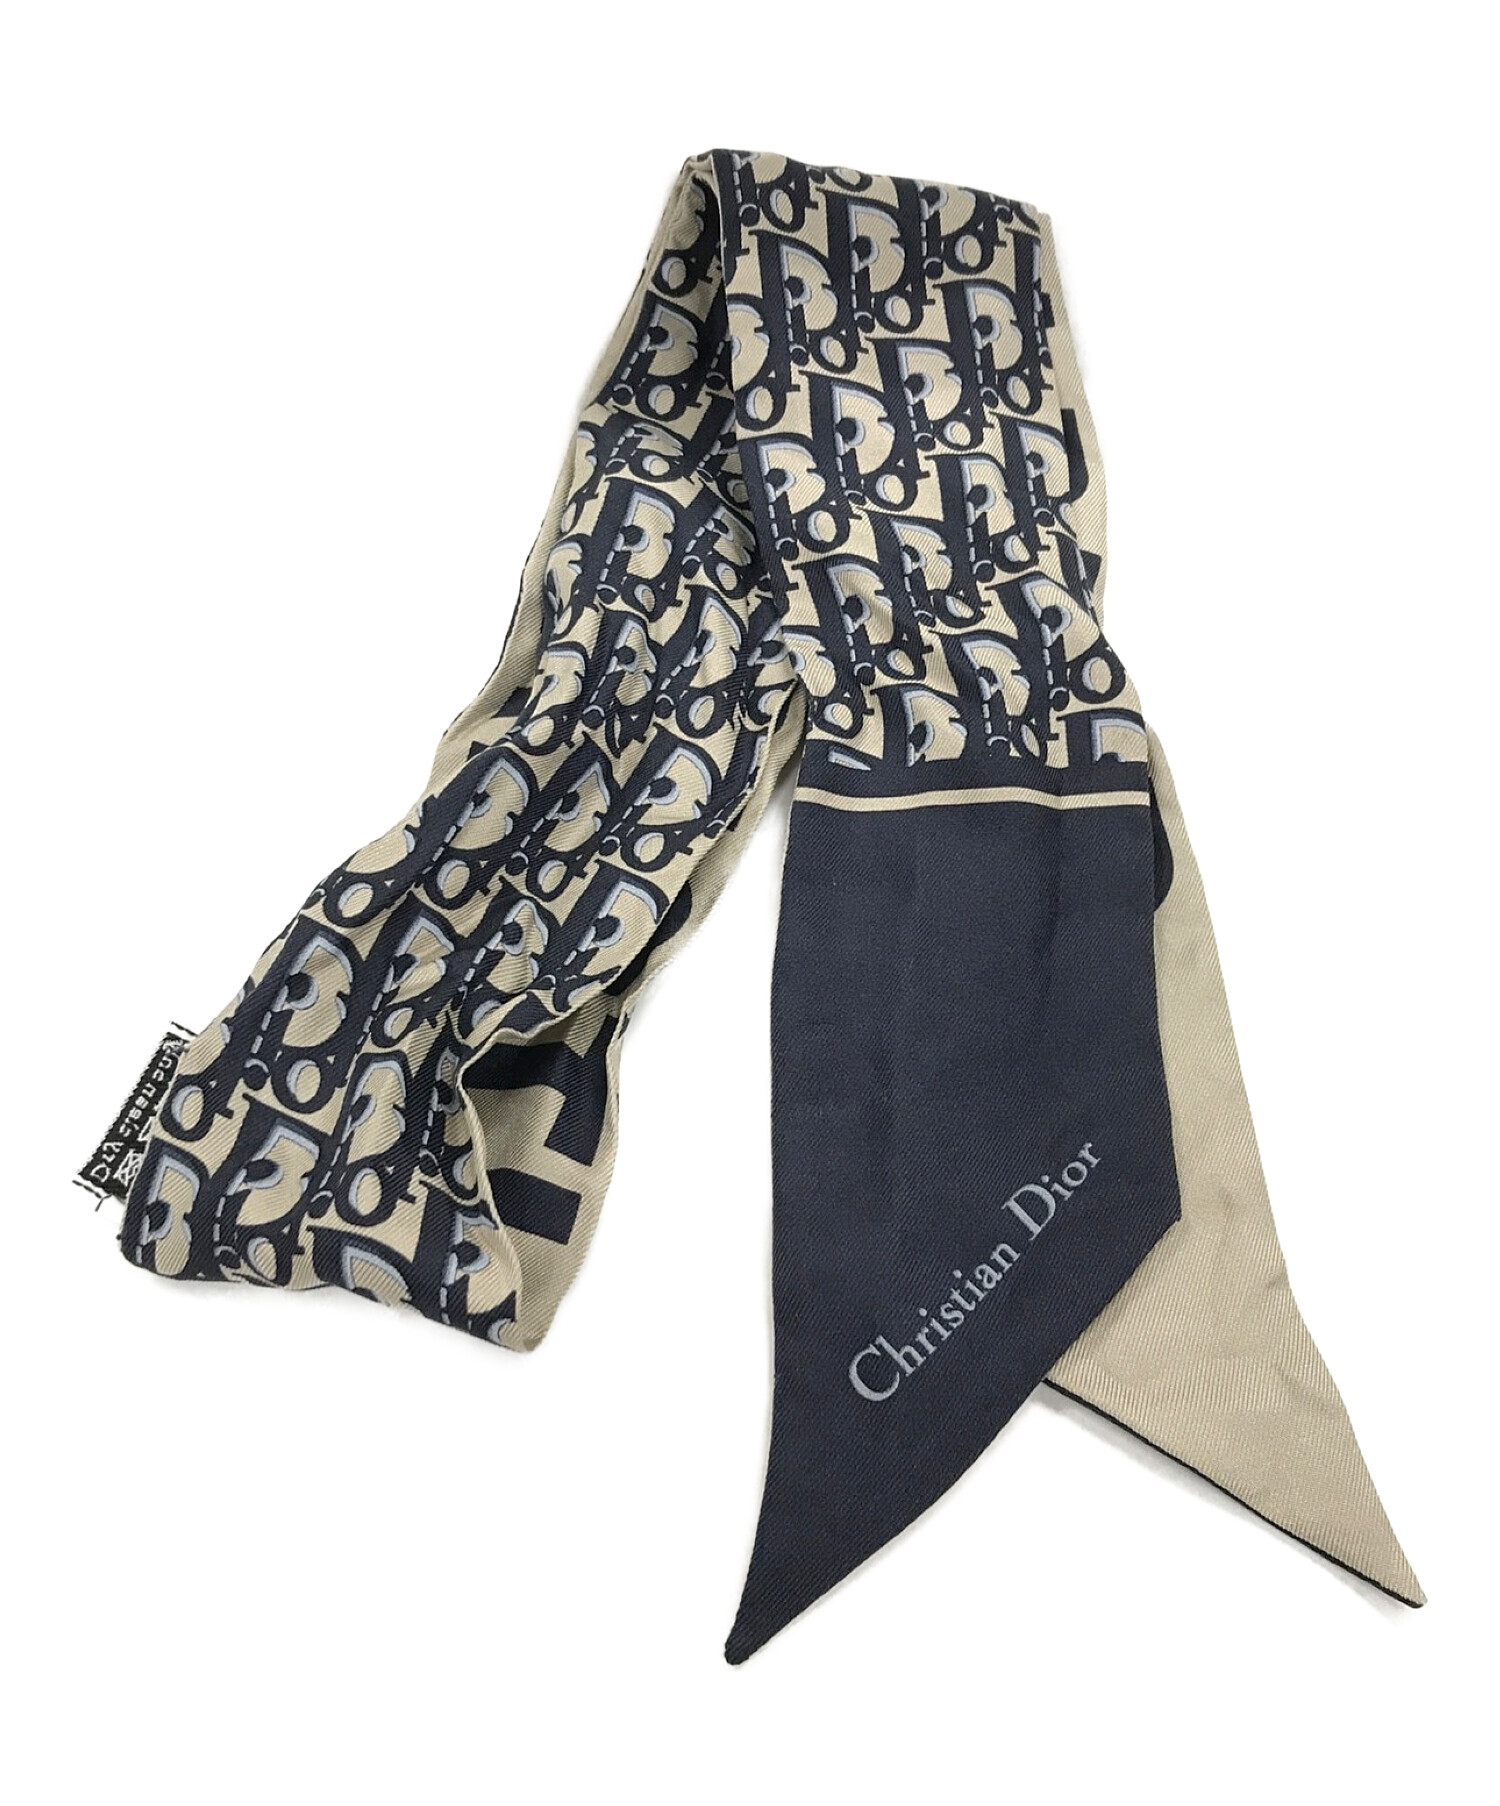 Christian Dior (クリスチャン ディオール) スカーフ グレージュ×ネイビー サイズ:実寸サイズにてご確認ください。